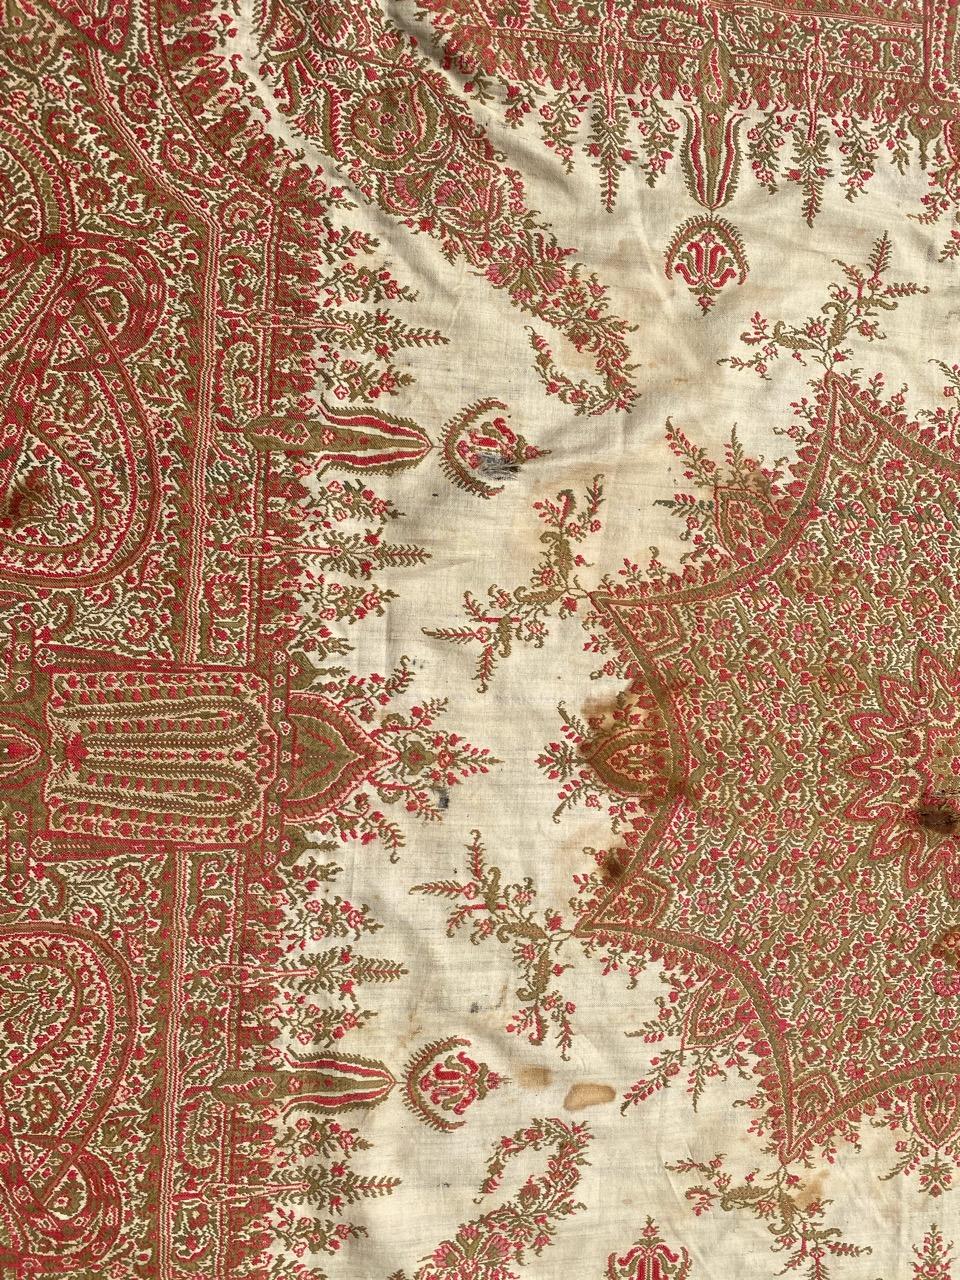 Sehr schönes französisches Kaschmir-Tuch aus dem späten 19. Jahrhundert mit schönem Blumenmuster und weißer Feldfarbe, mechanische Jaquar-Fertigung mit Wolle auf Wolle gewebt.

✨✨✨
